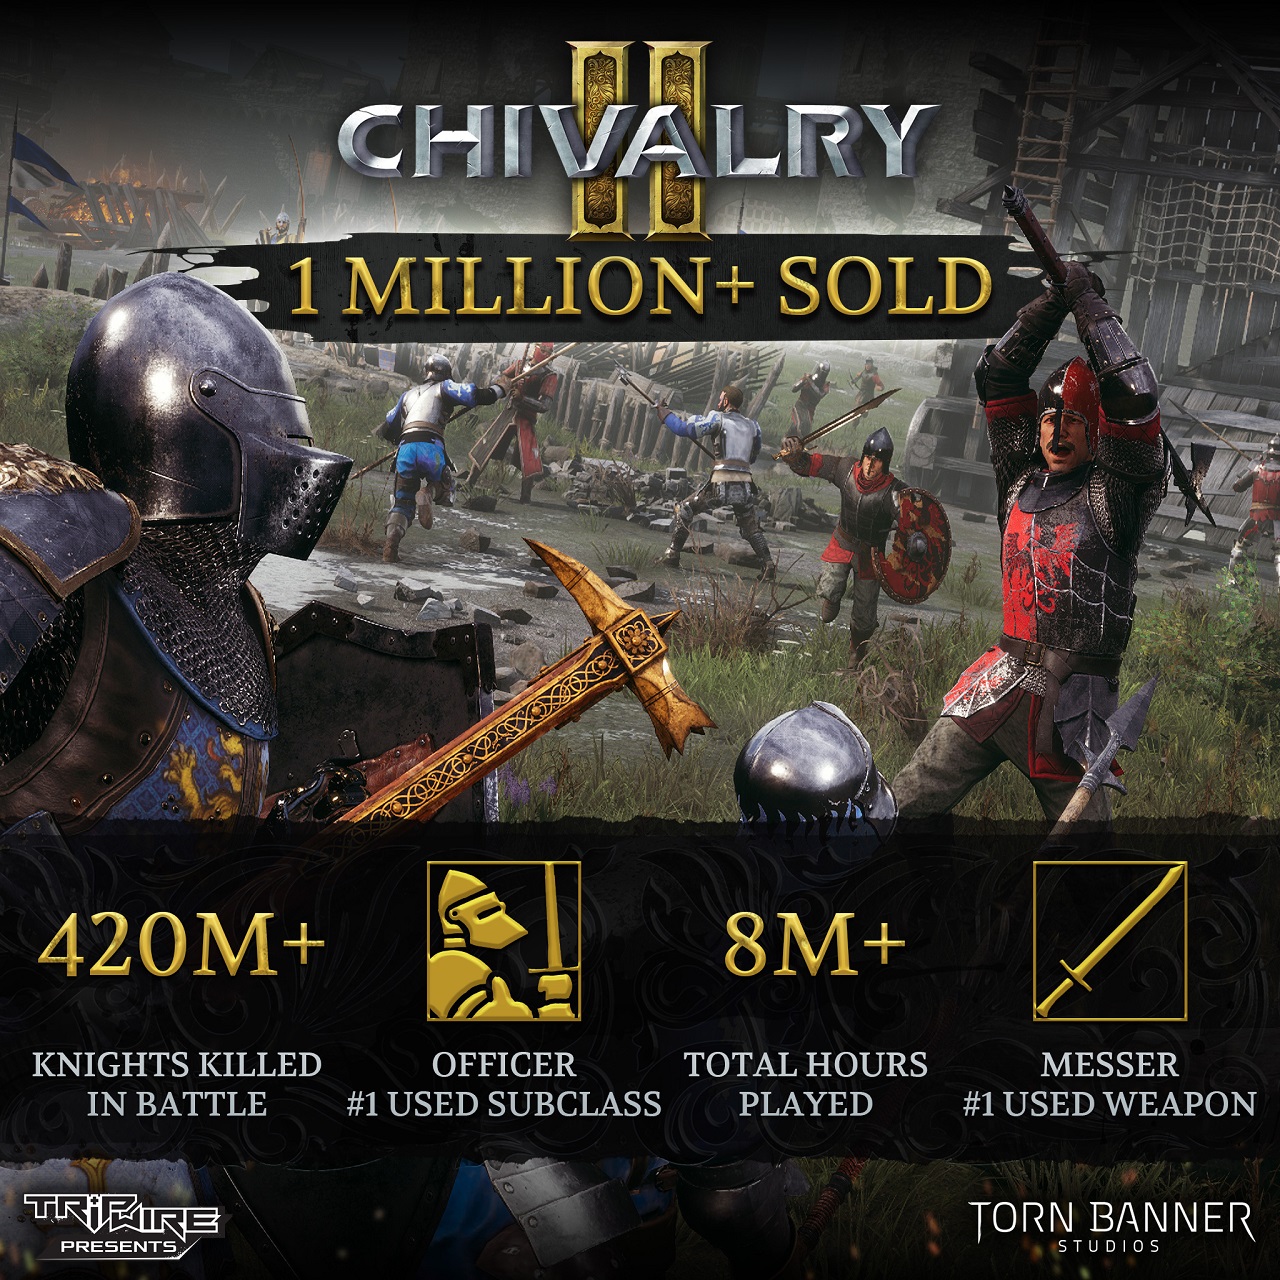 「Chivalry 2」の販売本数が100万本を突破。総キル数やプレイ時間などゲーム内の統計データの公開も「Chivalry 2」の販売本数が100万本を突破。総キル数やプレイ時間などゲーム内の統計データの公開も